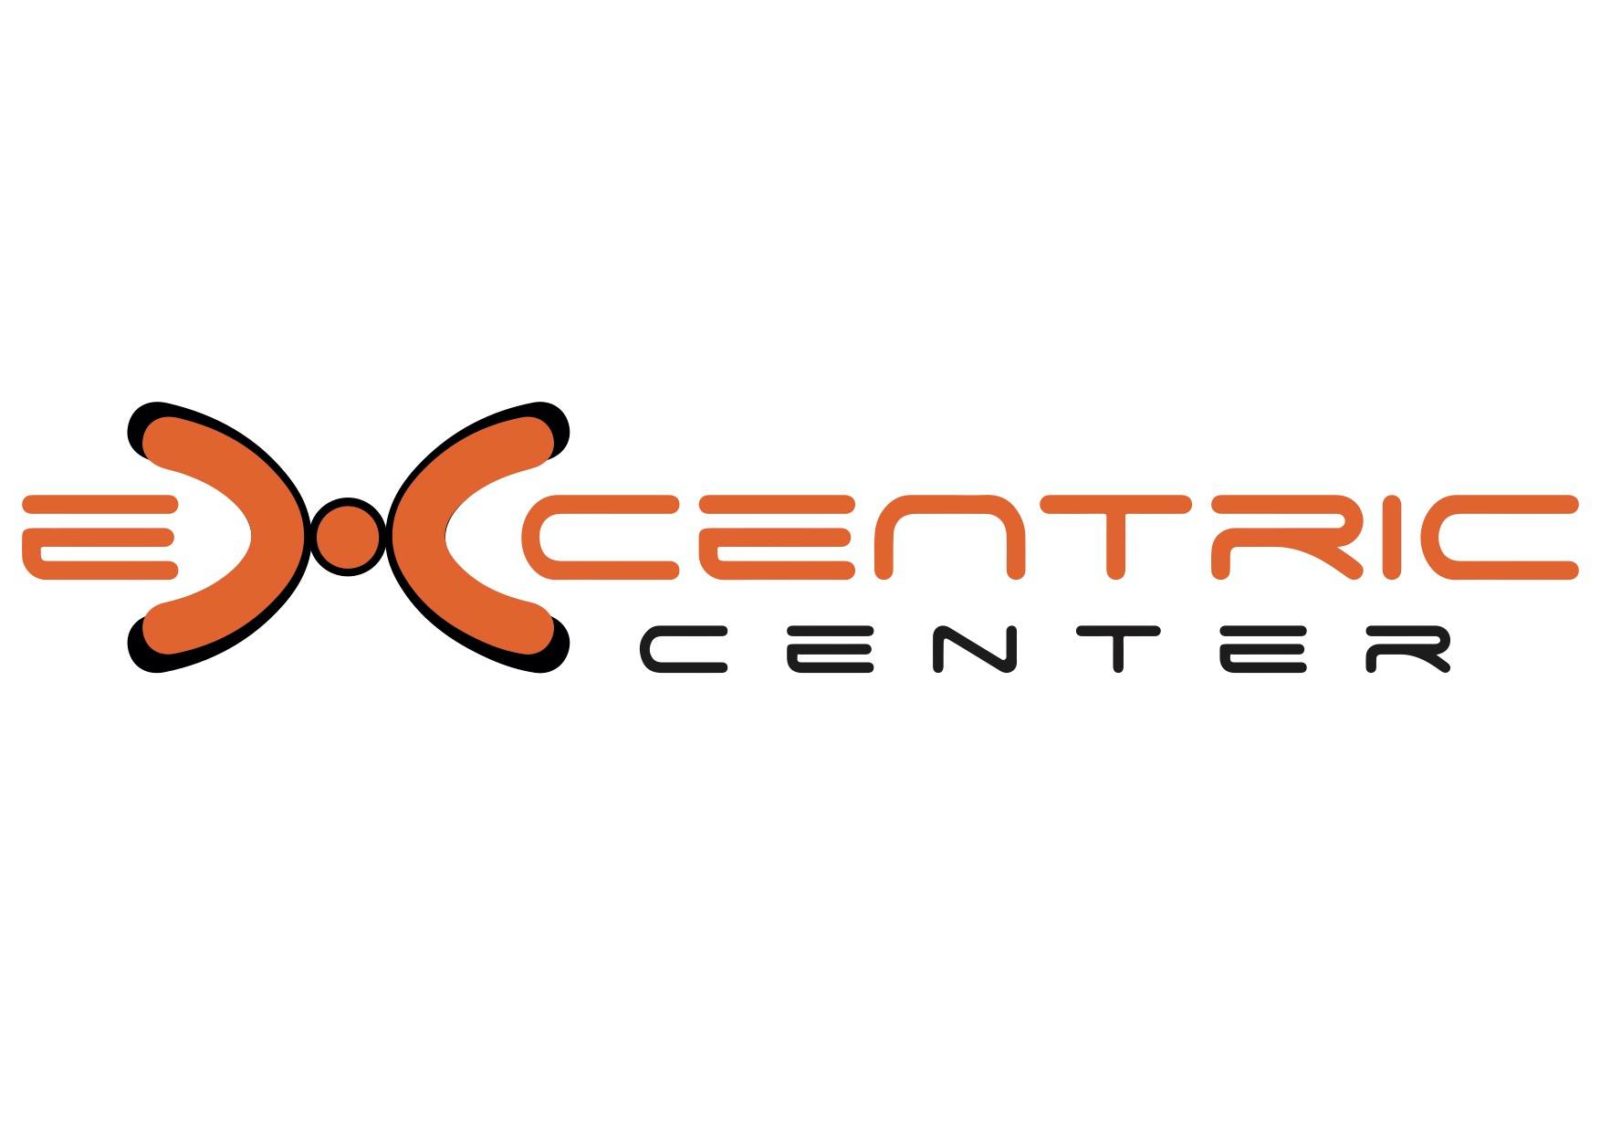 Exentric Center